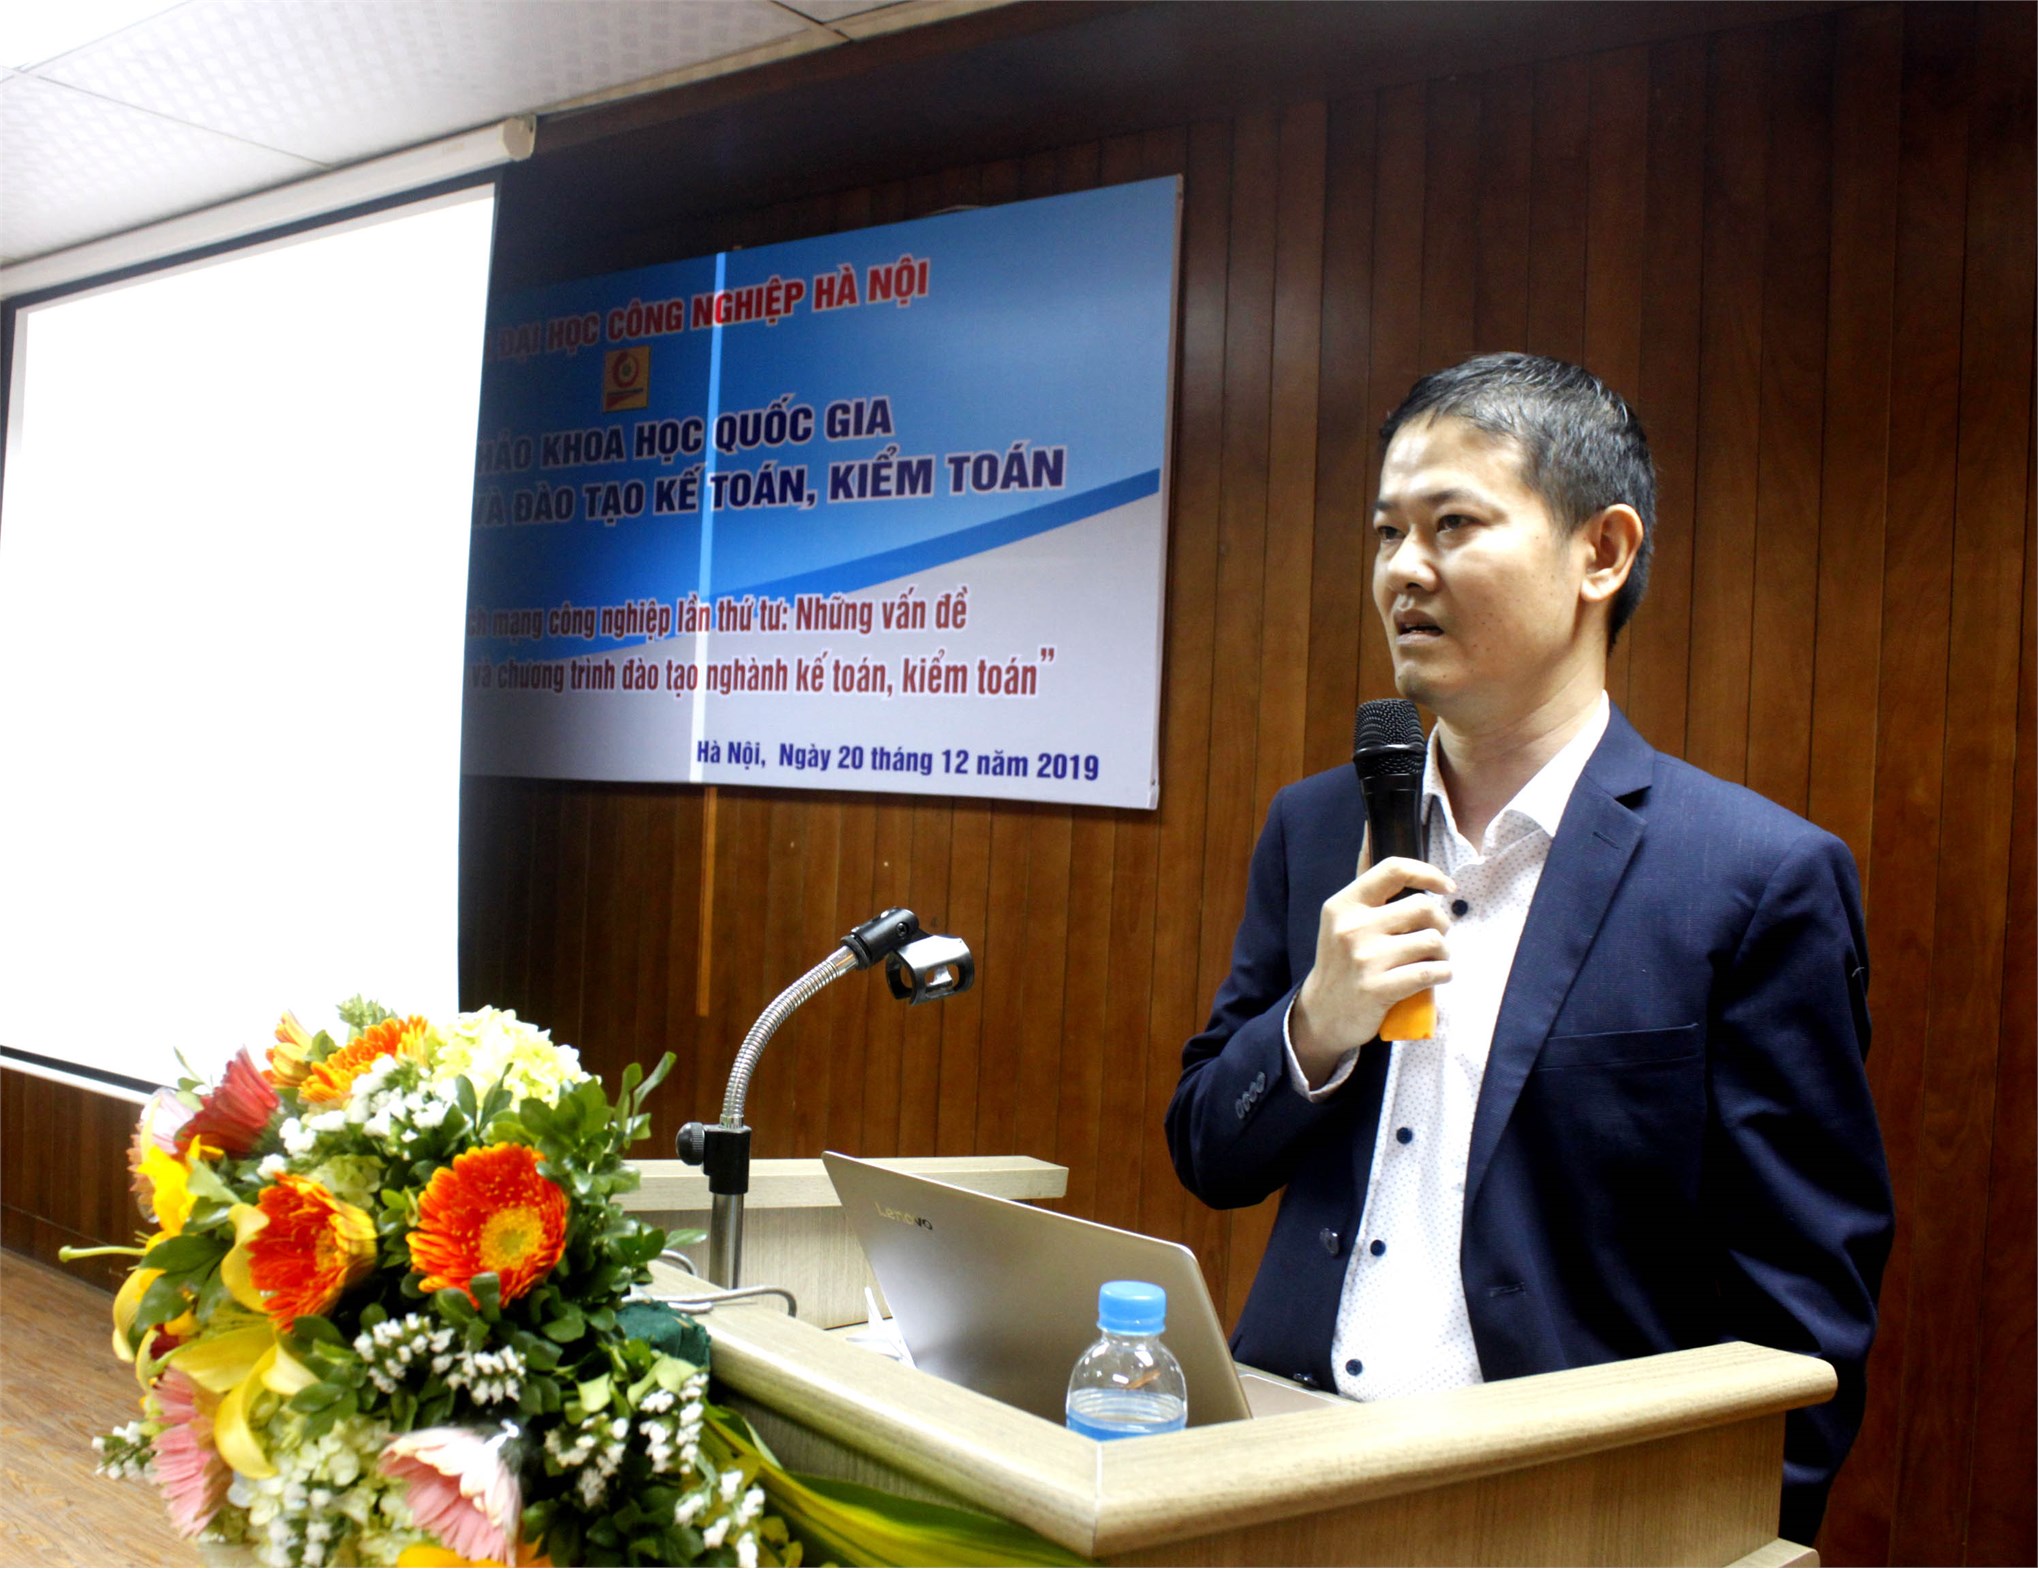 Trường Đại học Công nghiệp Hà Nội tổ chức hội thảo khoa học quốc gia về kế toán, kiểm toán